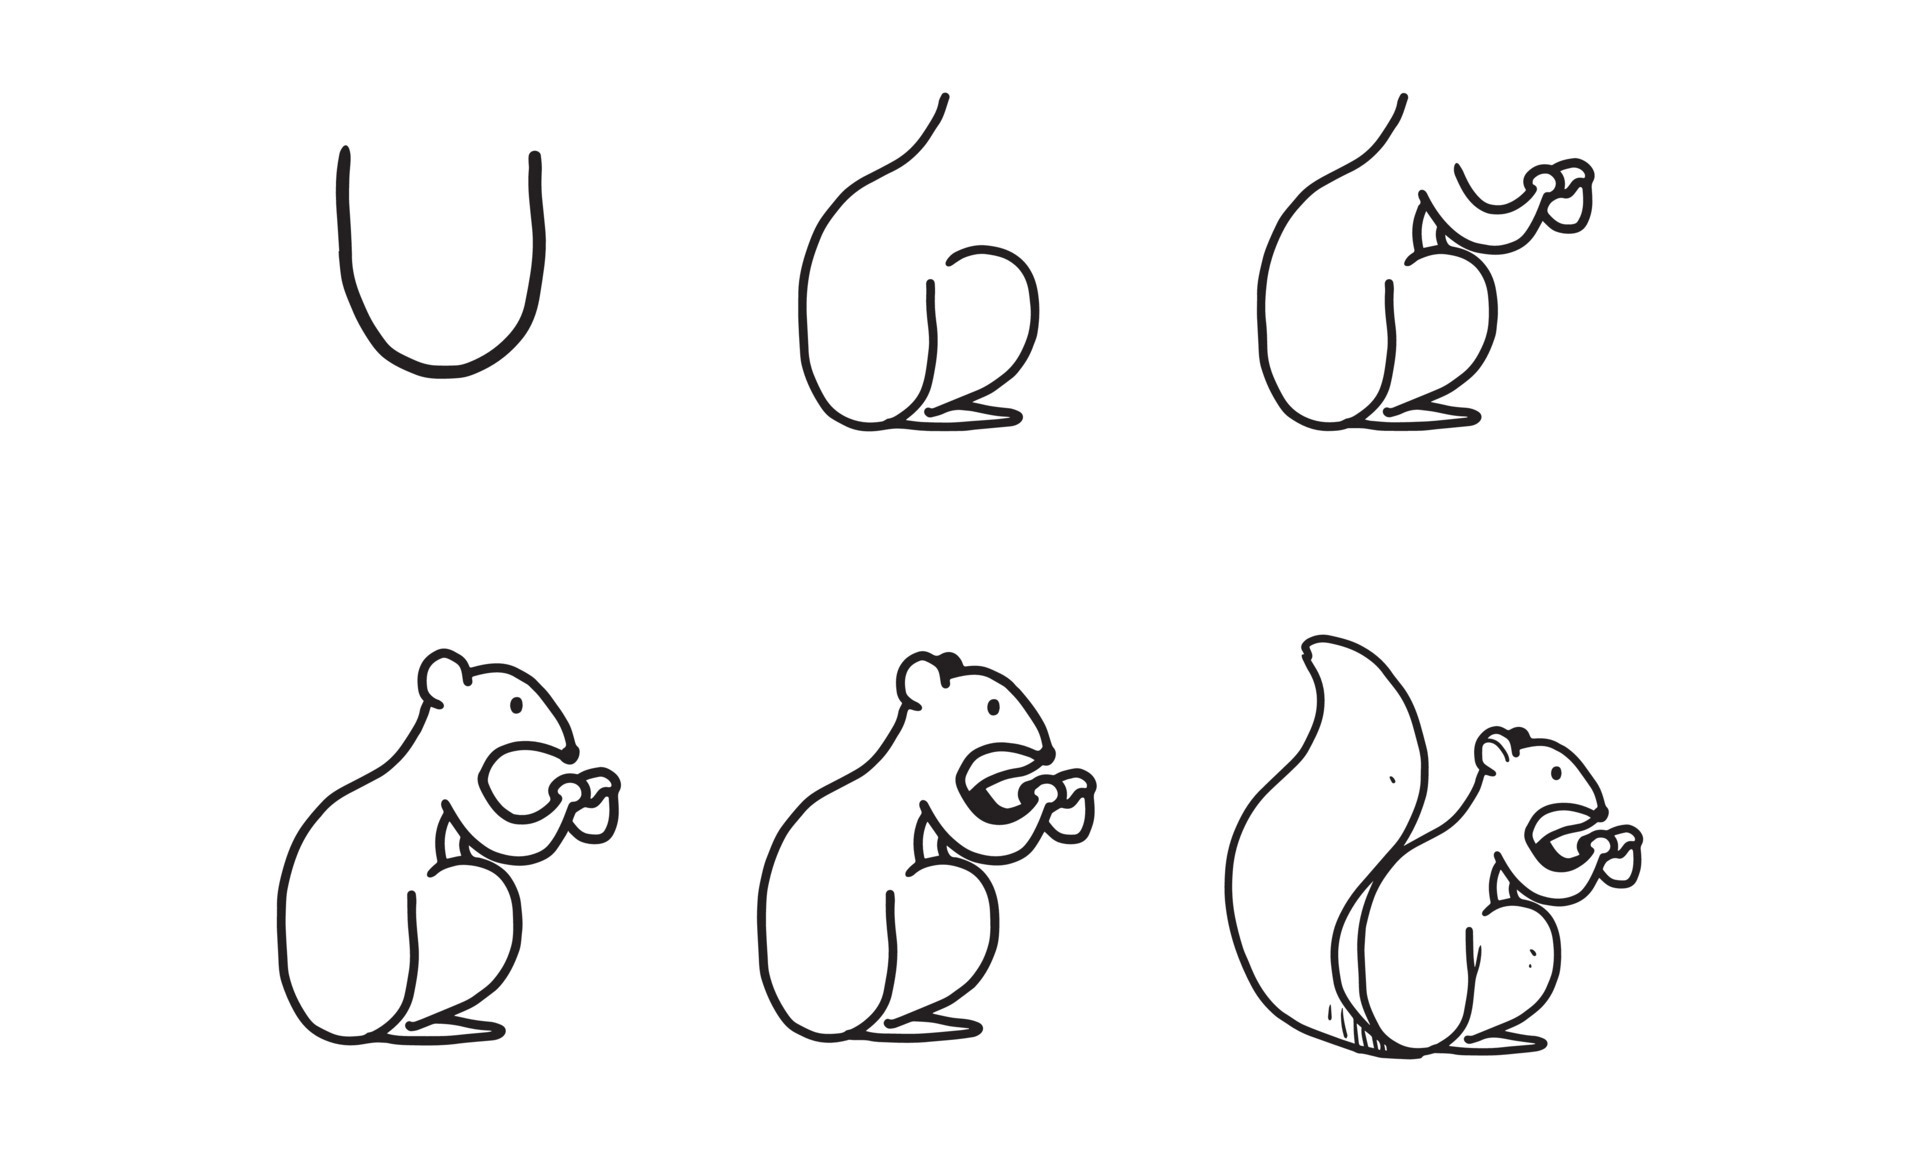 Bạn có muốn biết cách vẽ con sóc đơn giản nhất? Hãy xem hình ảnh này để tìm hiểu những bước đầu tiên để trở thành một nghệ sĩ vẽ sách.